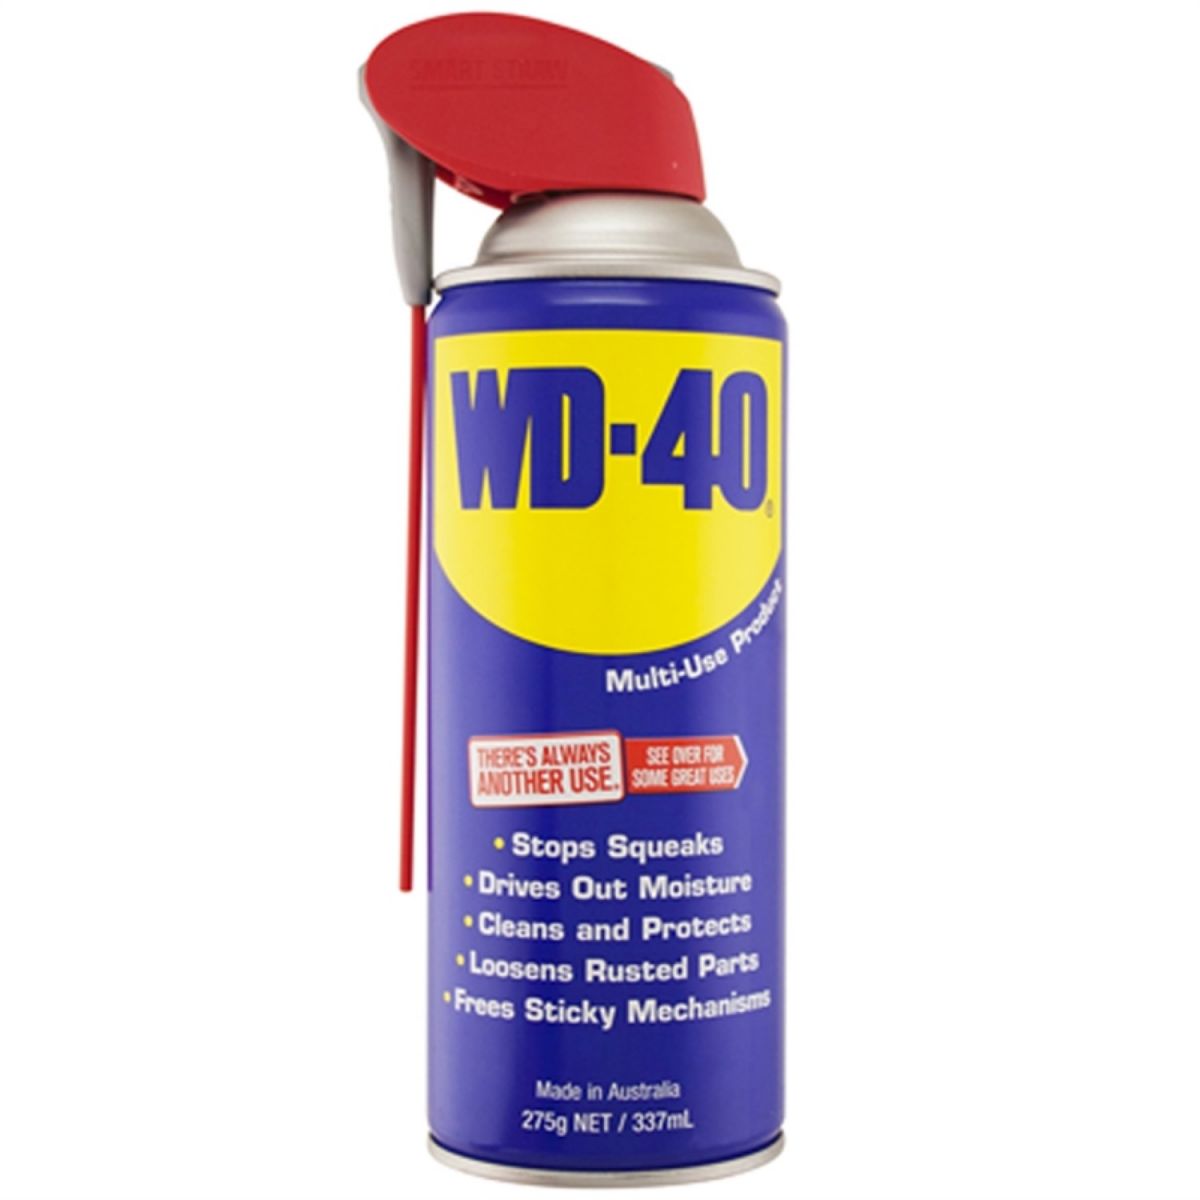 WD-40 STRAW 450ML (1ST)